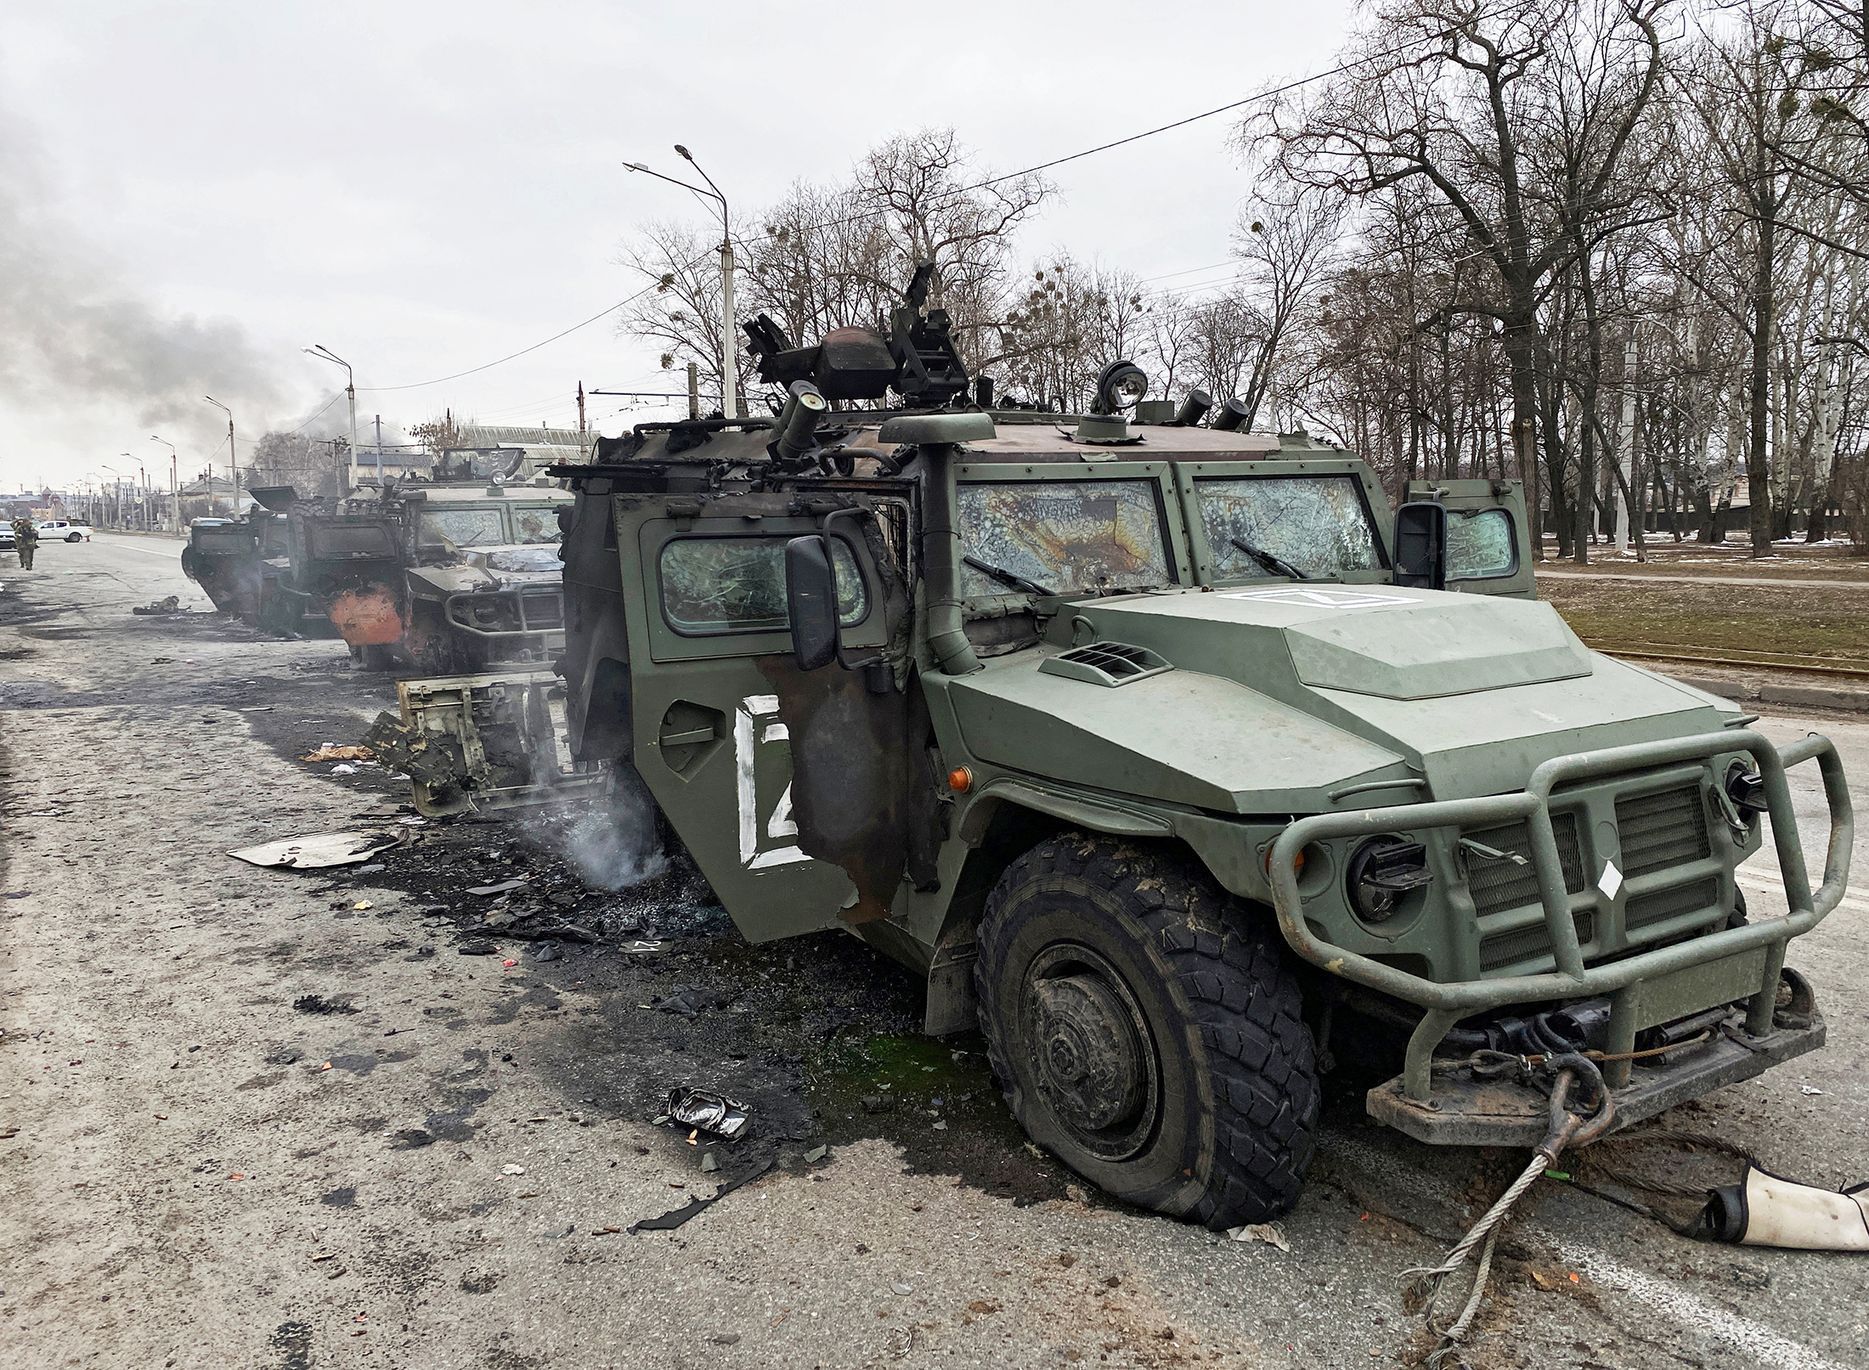 Foto / Charkov / Ukrajina /  Rusko / Útok / Invaze / 28. 2. 2022